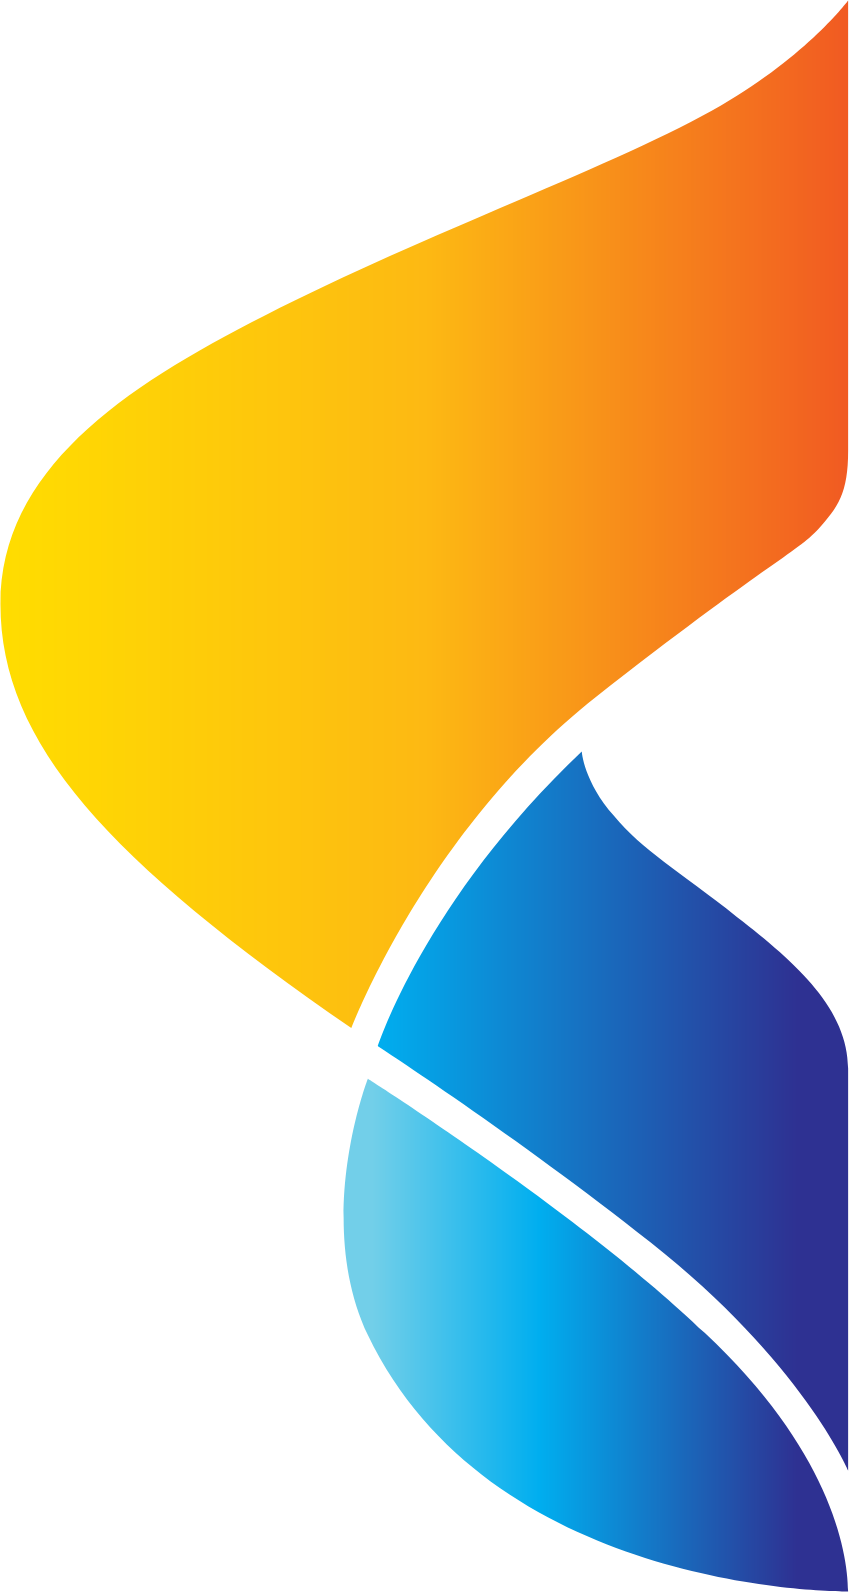 Thai Union Group logo (PNG transparent)